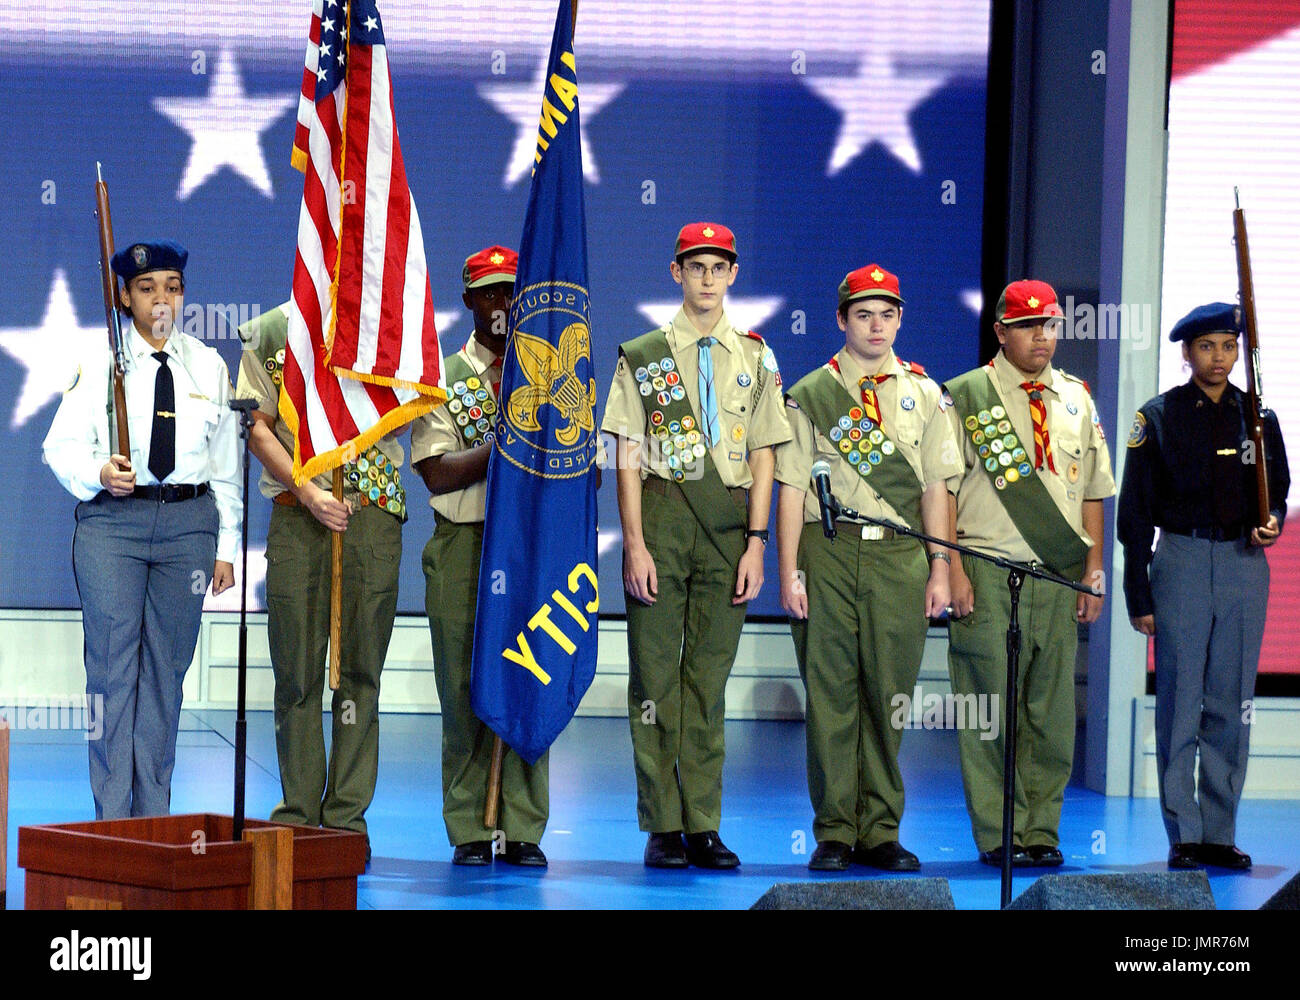 New York, NY - Agosto 30, 2004 -- Presentación de los colores por el mayor consejo en Nueva York de Boys Scouts Tropa 520 y la aplicación de la Ley de tránsito NYPD Mesa exploradores Post 5233 en 2004, en la Convención Nacional Republicana en Nueva York, el 30 de agosto de 2004. Crédito: Ron Sachs / CNP Foto de stock